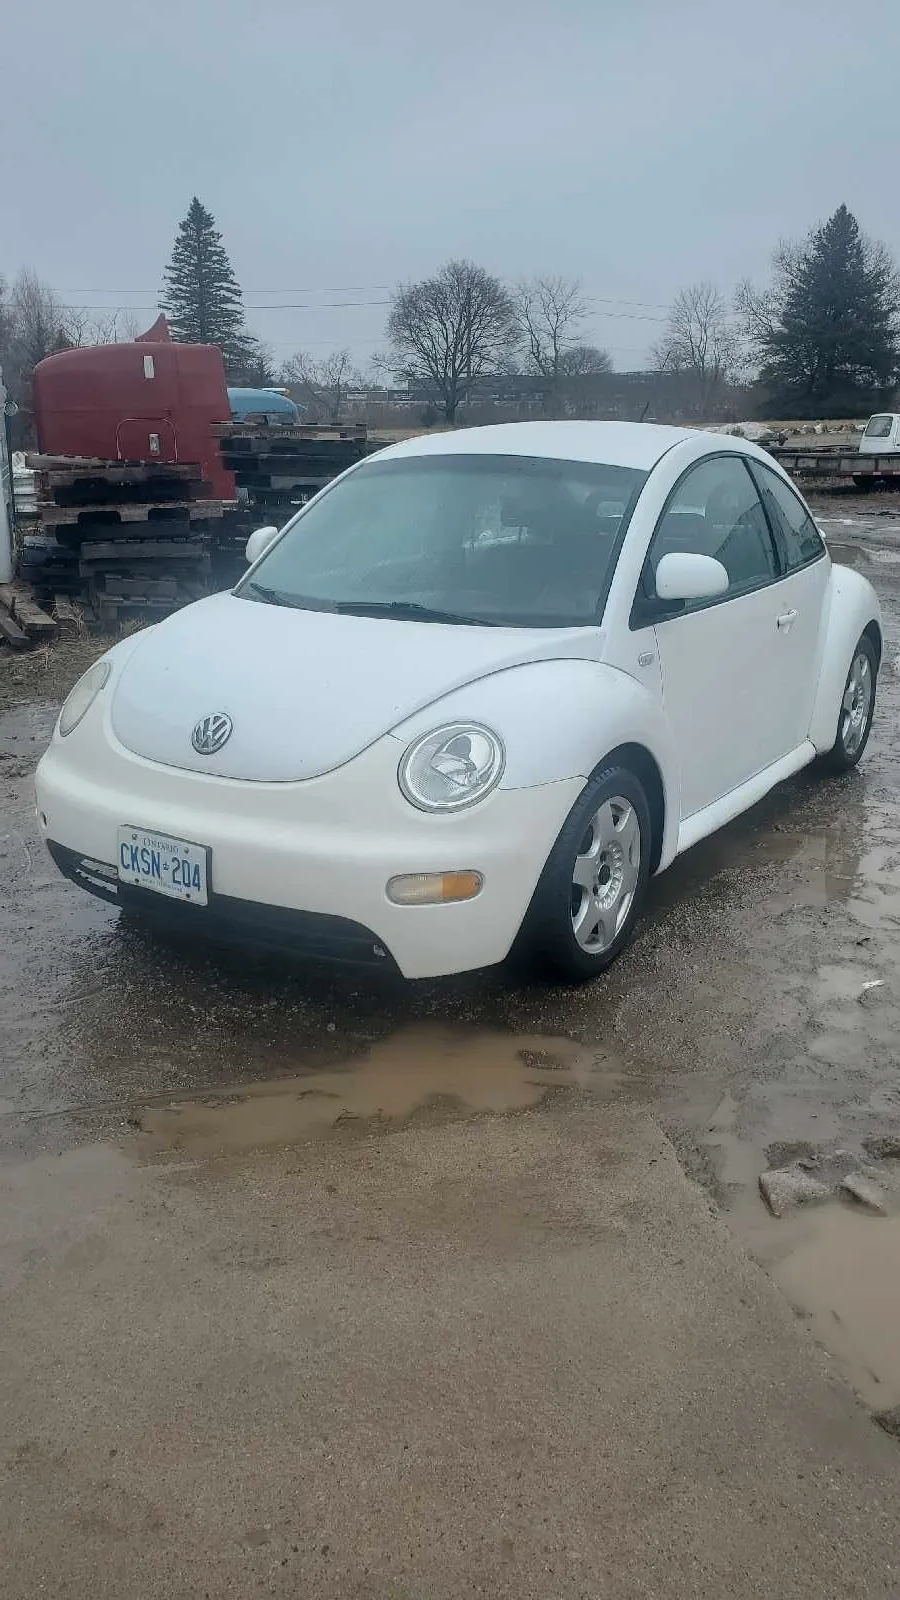 1999 VW Beetle